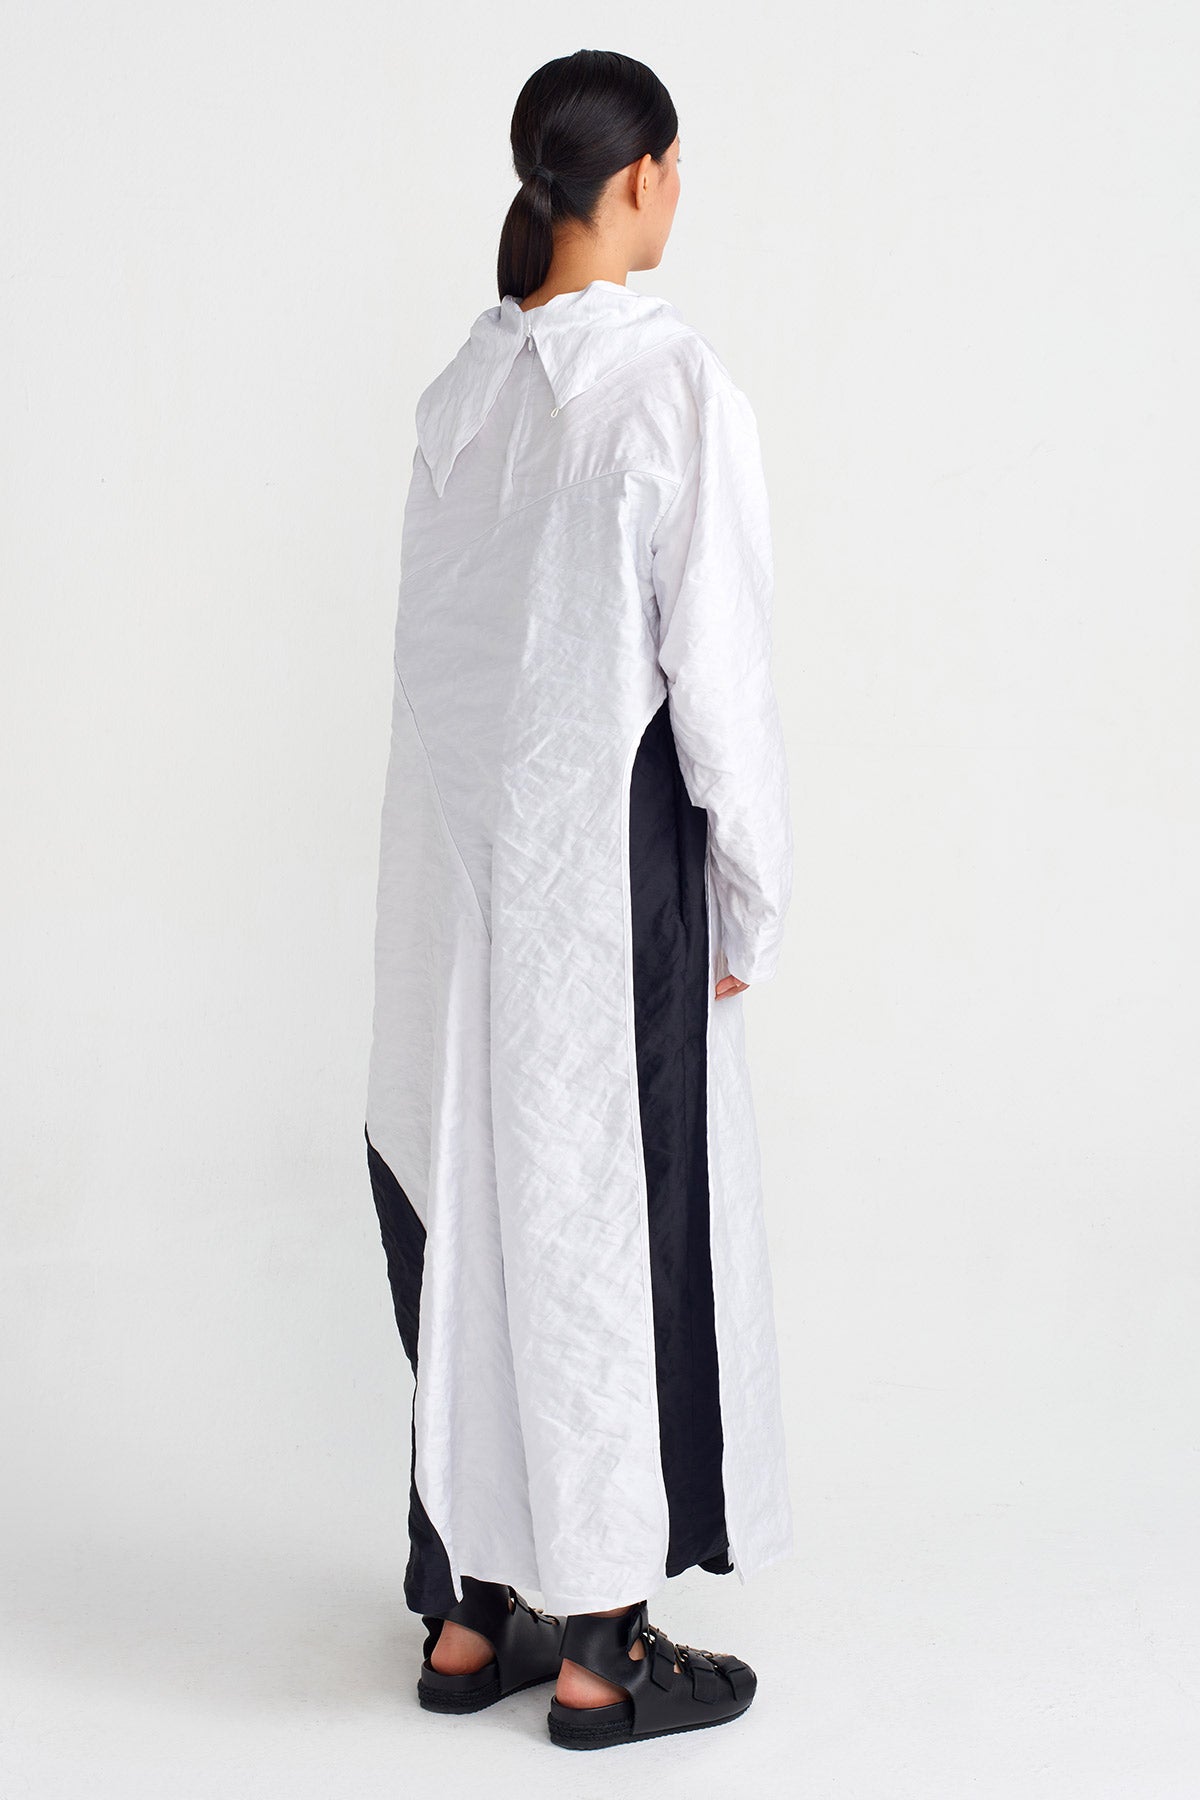 Beyaz / Siyah Uzun Kol Asimetrik Dikimli Uzun Elbise-Y244014041